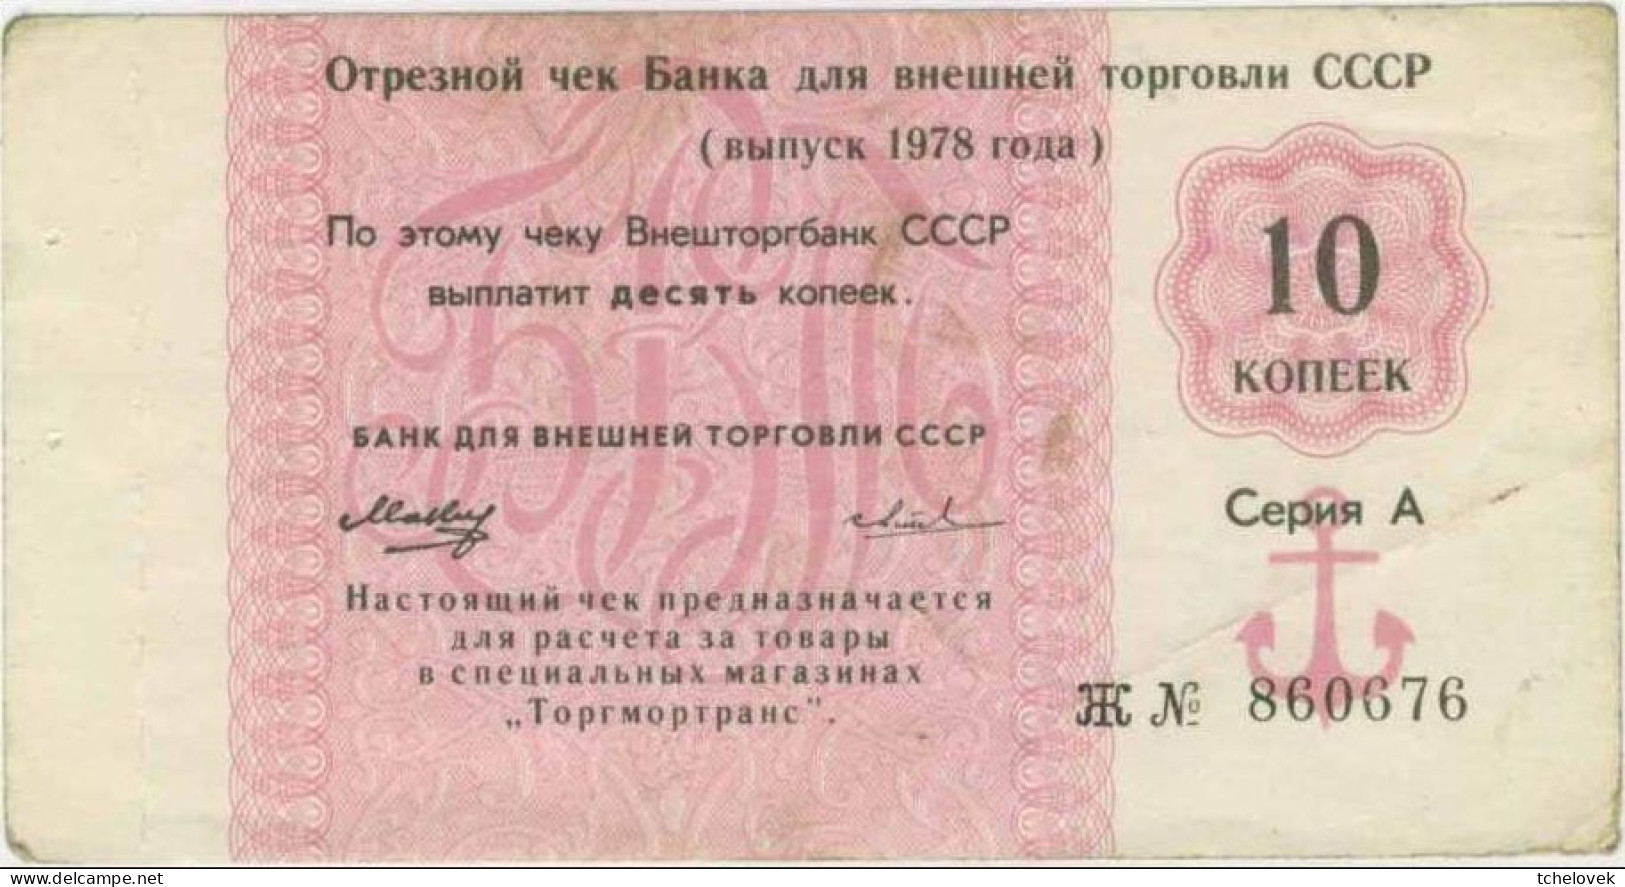 (Billets).Russie Russia URSS USSR Vneshposiltorg Vneshtorgbank 10 K 1978 N° 860676 Serie J. Foreign Exchange Certificate - Russland